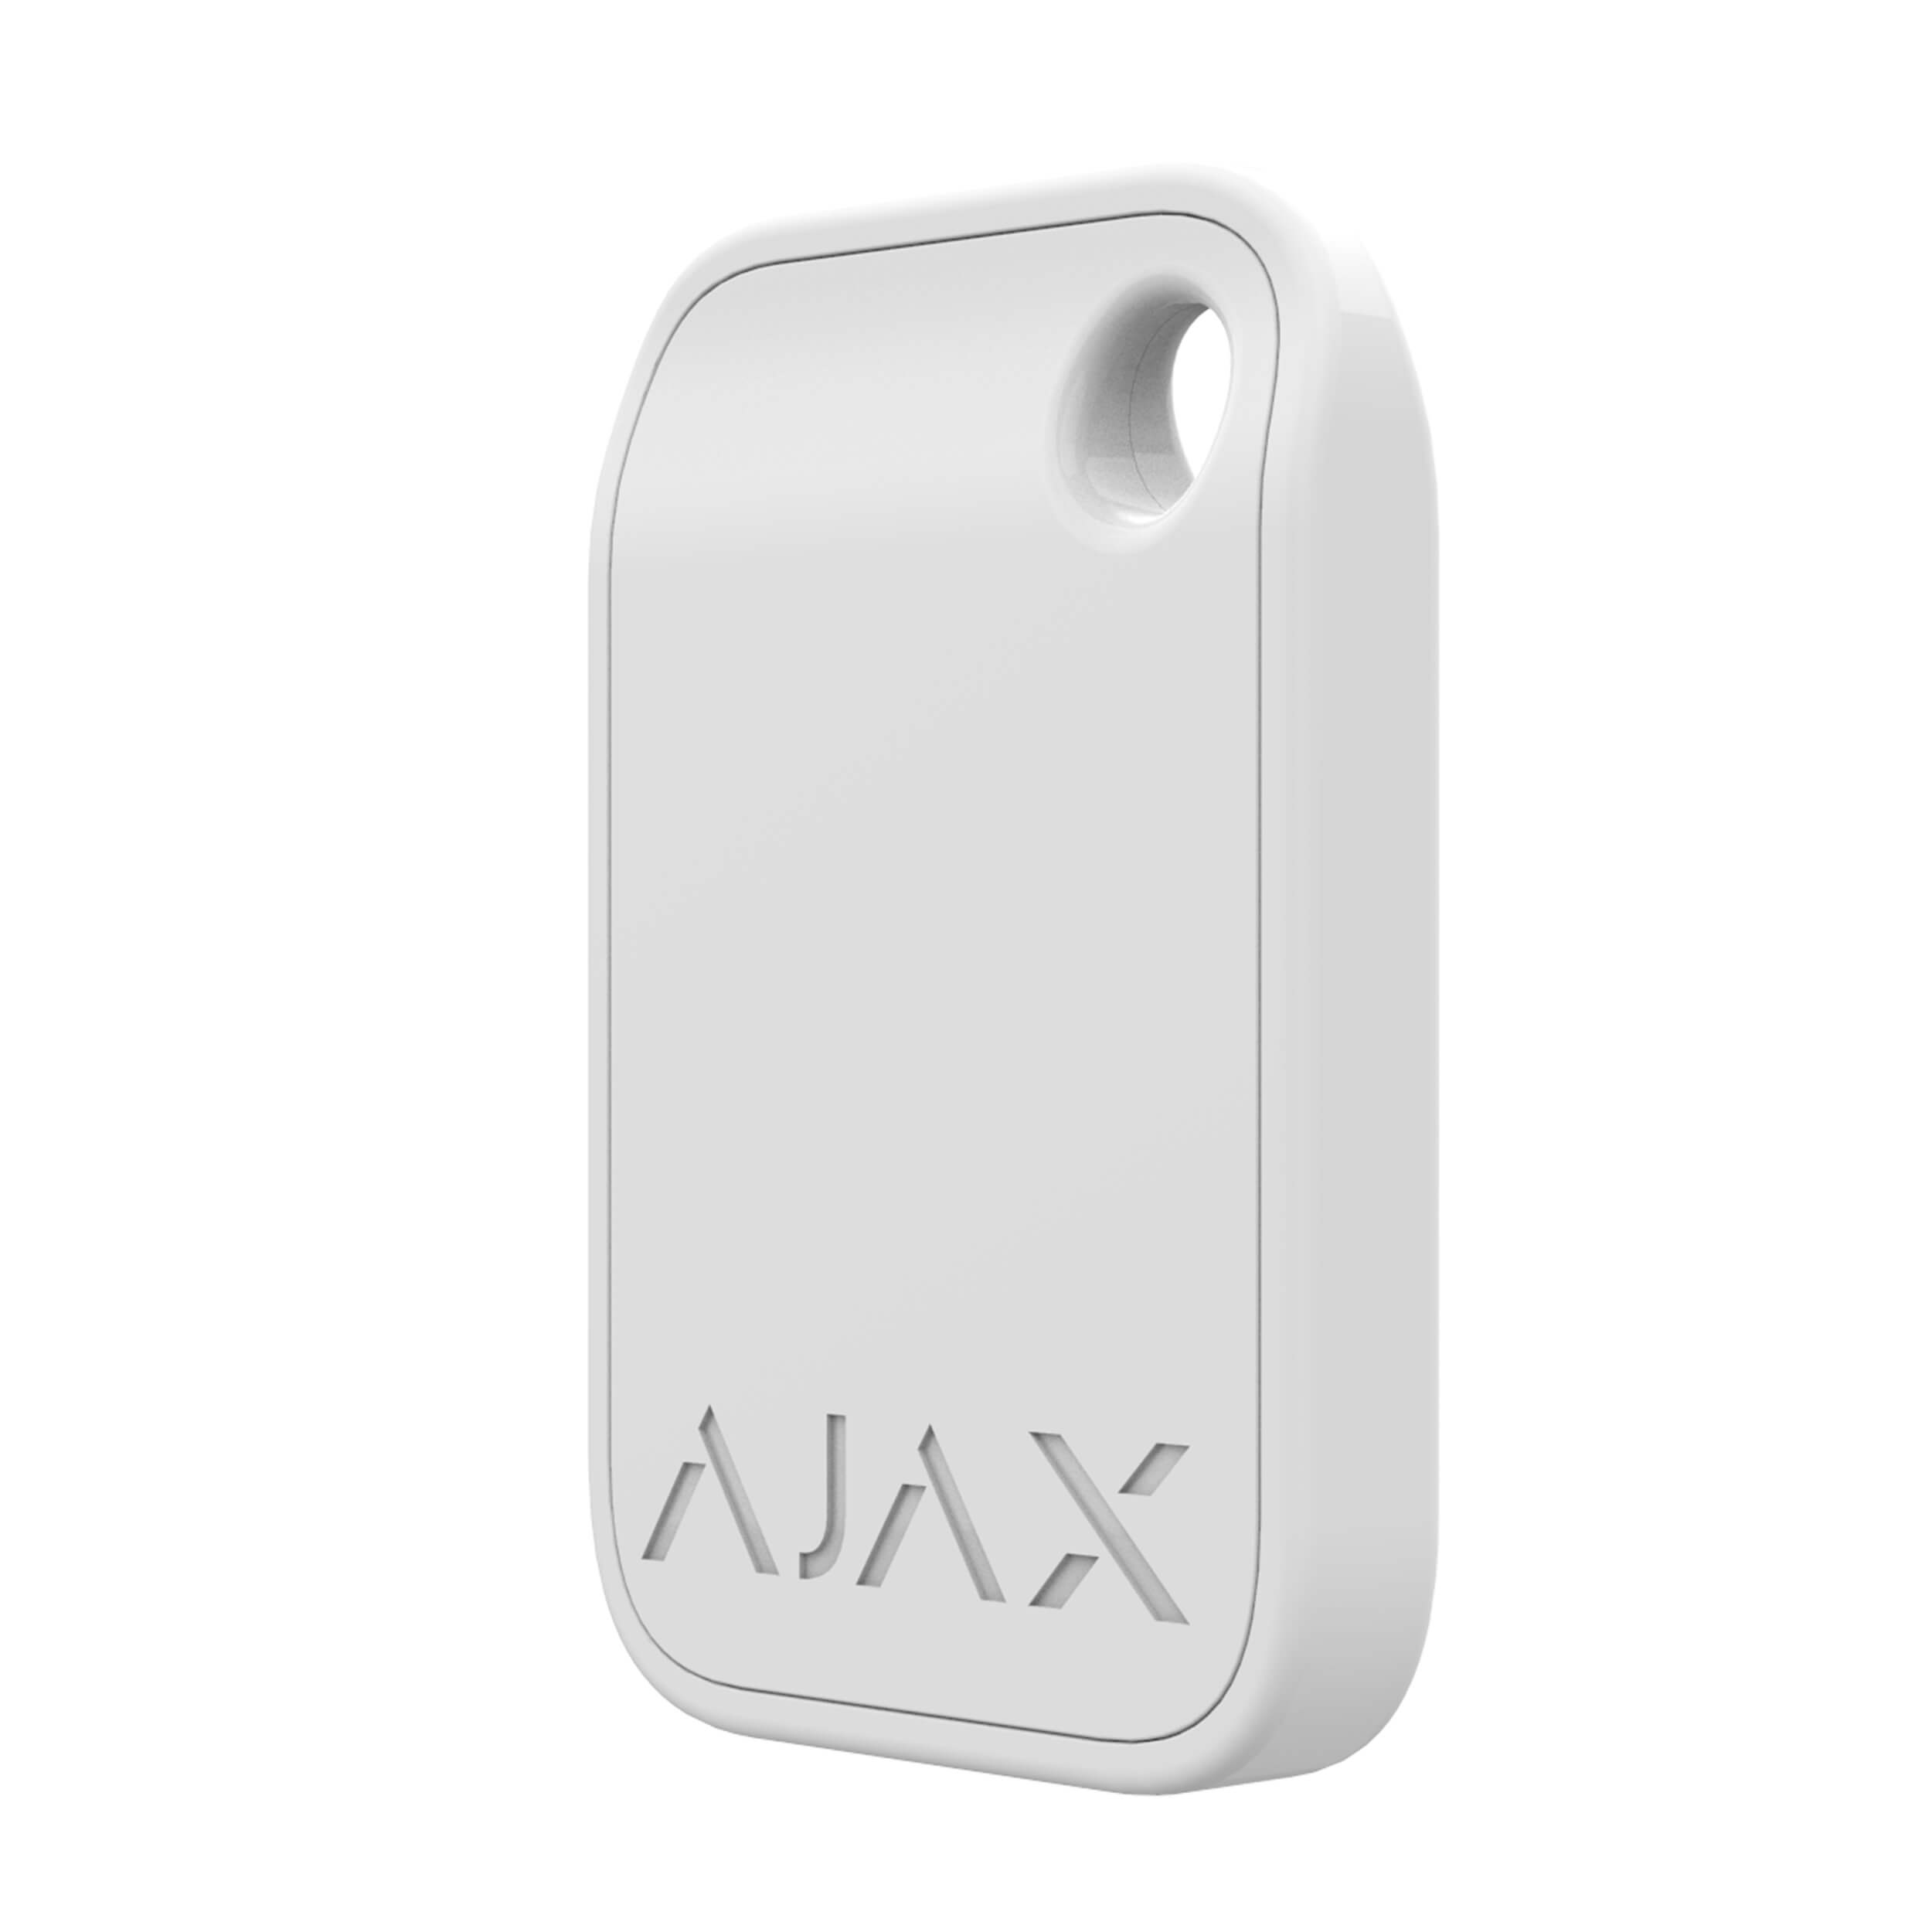 AJAX | Kontaktloser Schlüsselanhänger | Verschlüsselt | KeyPad Plus | 1x Weiß | Tag